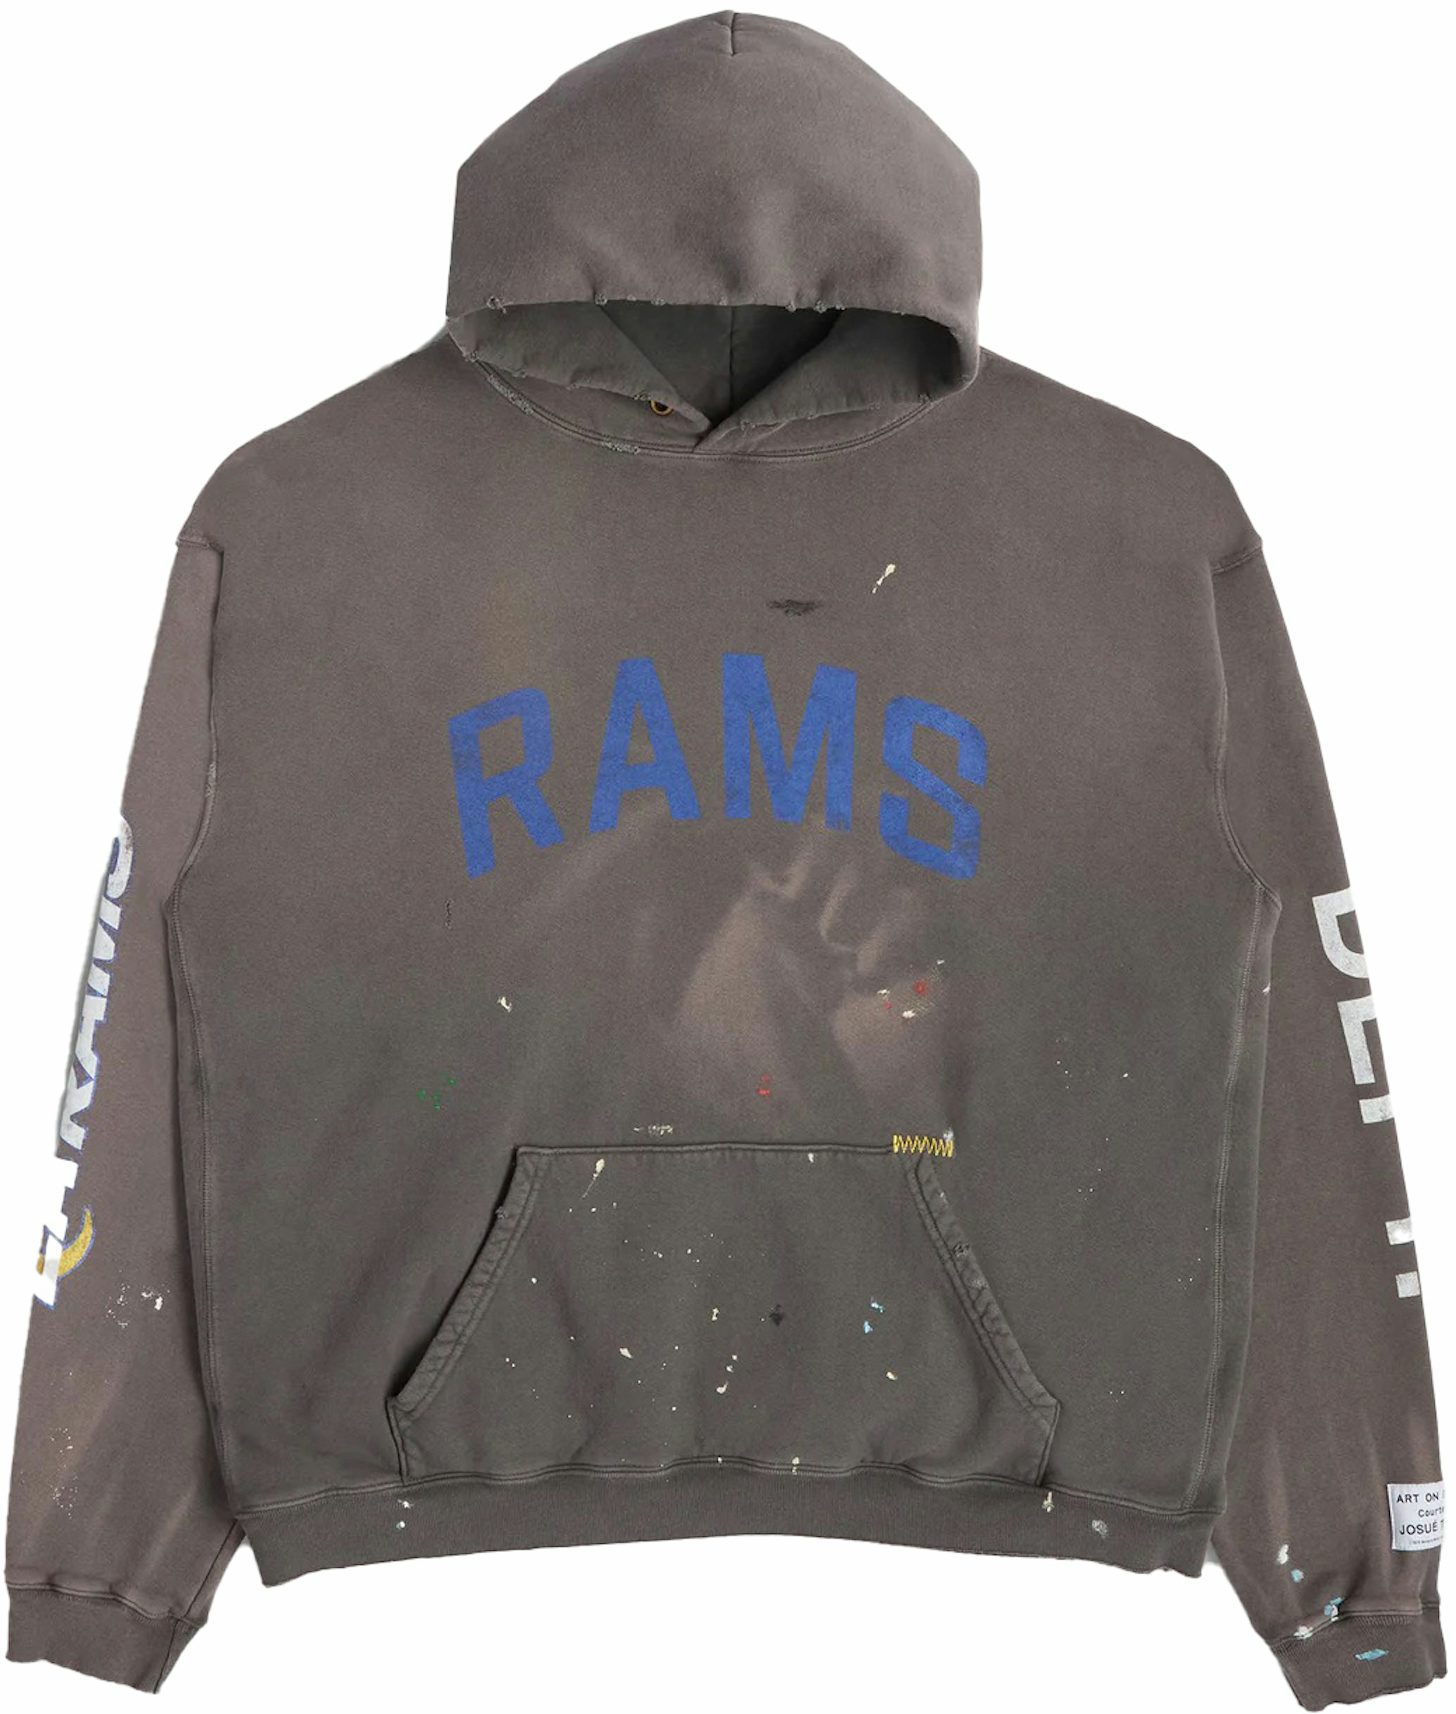 Vintage 90s 2000 St Louis Rams vintage sweatshirt.